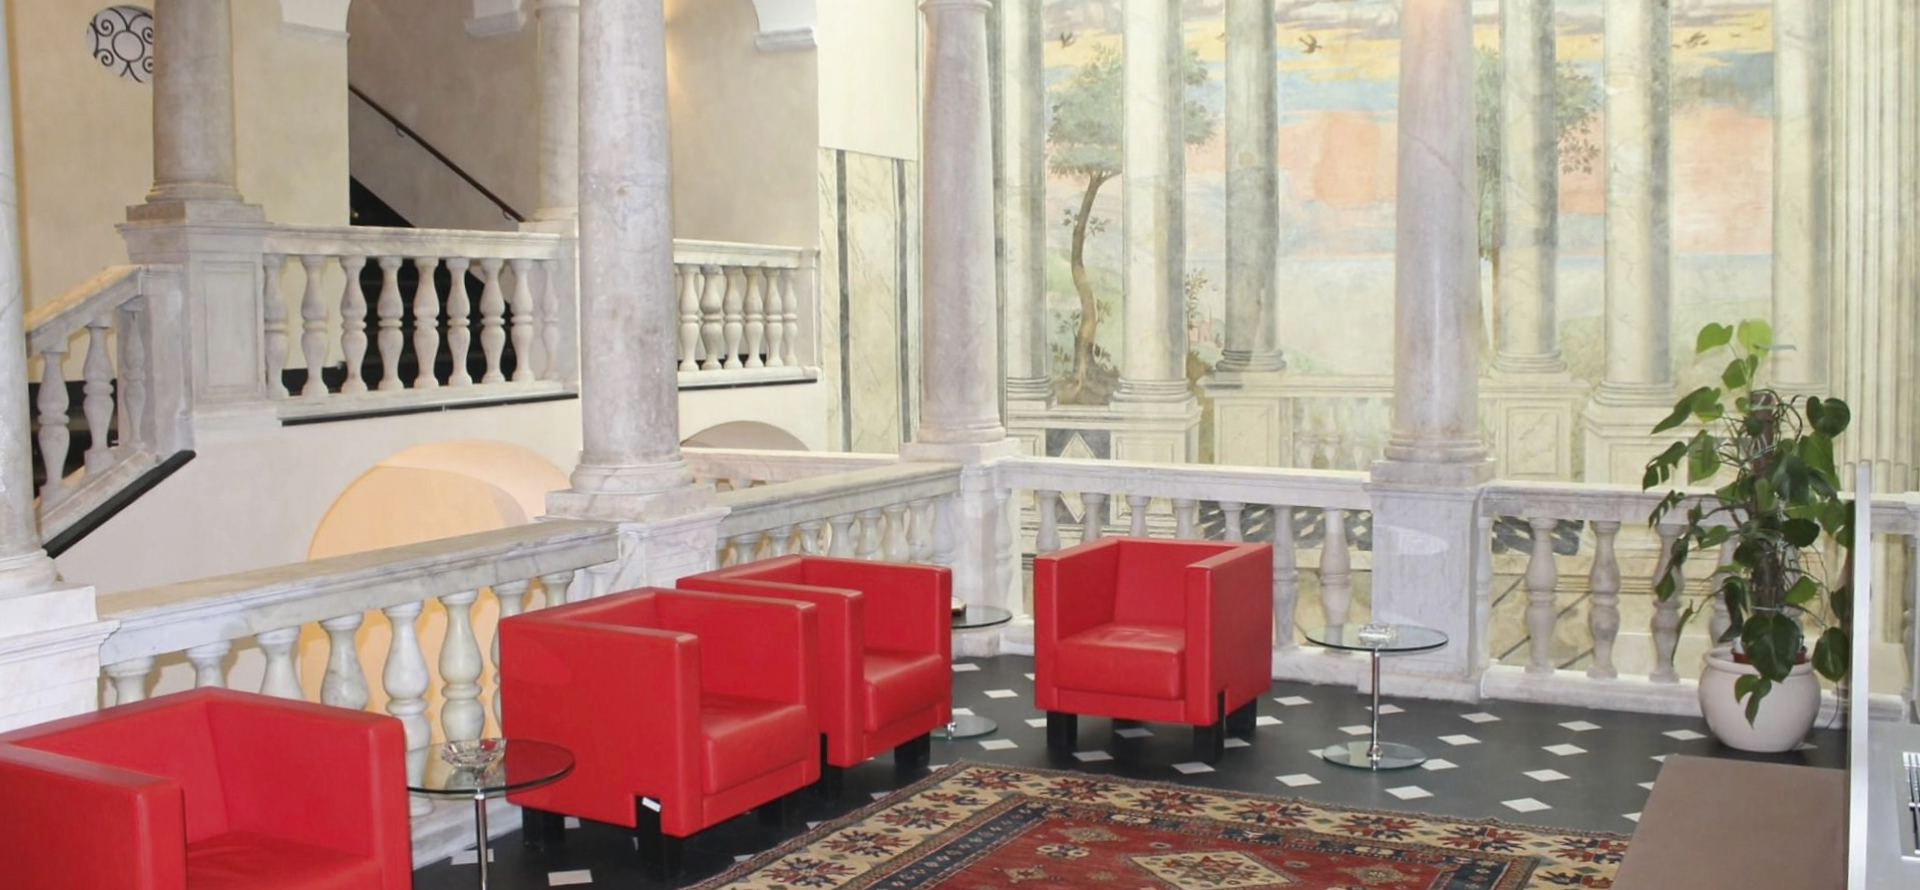 Rolli Days - Visite al piano nobile del Palazzo e alla sede del Premio Paganini